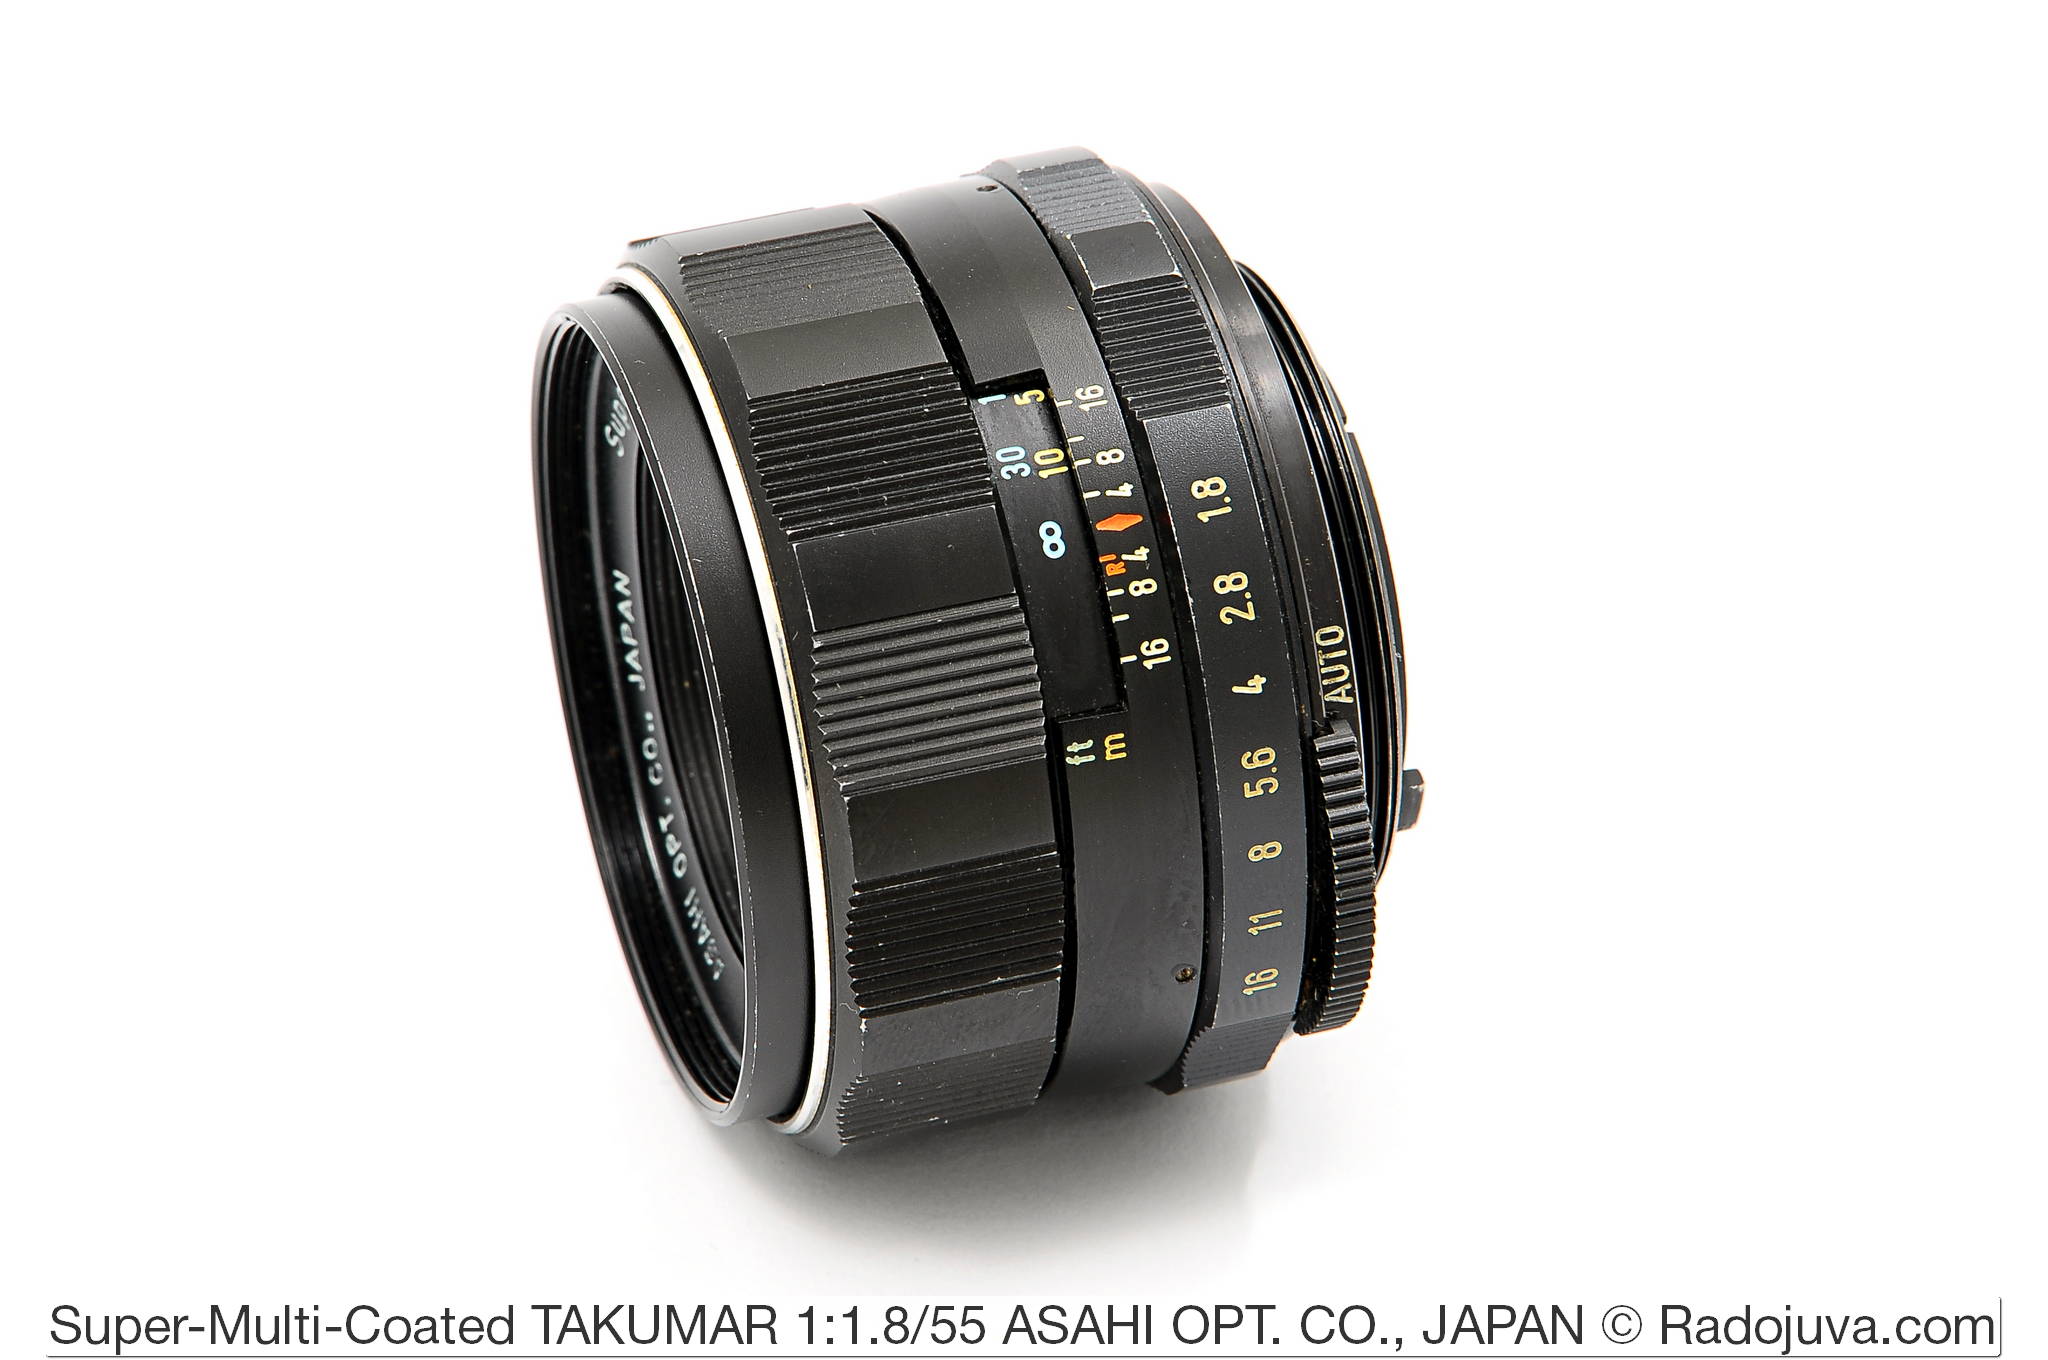 Super-Multi-Coated TAKUMAR 1:1.8/55 ASAHI OPT. CO., JAPAN